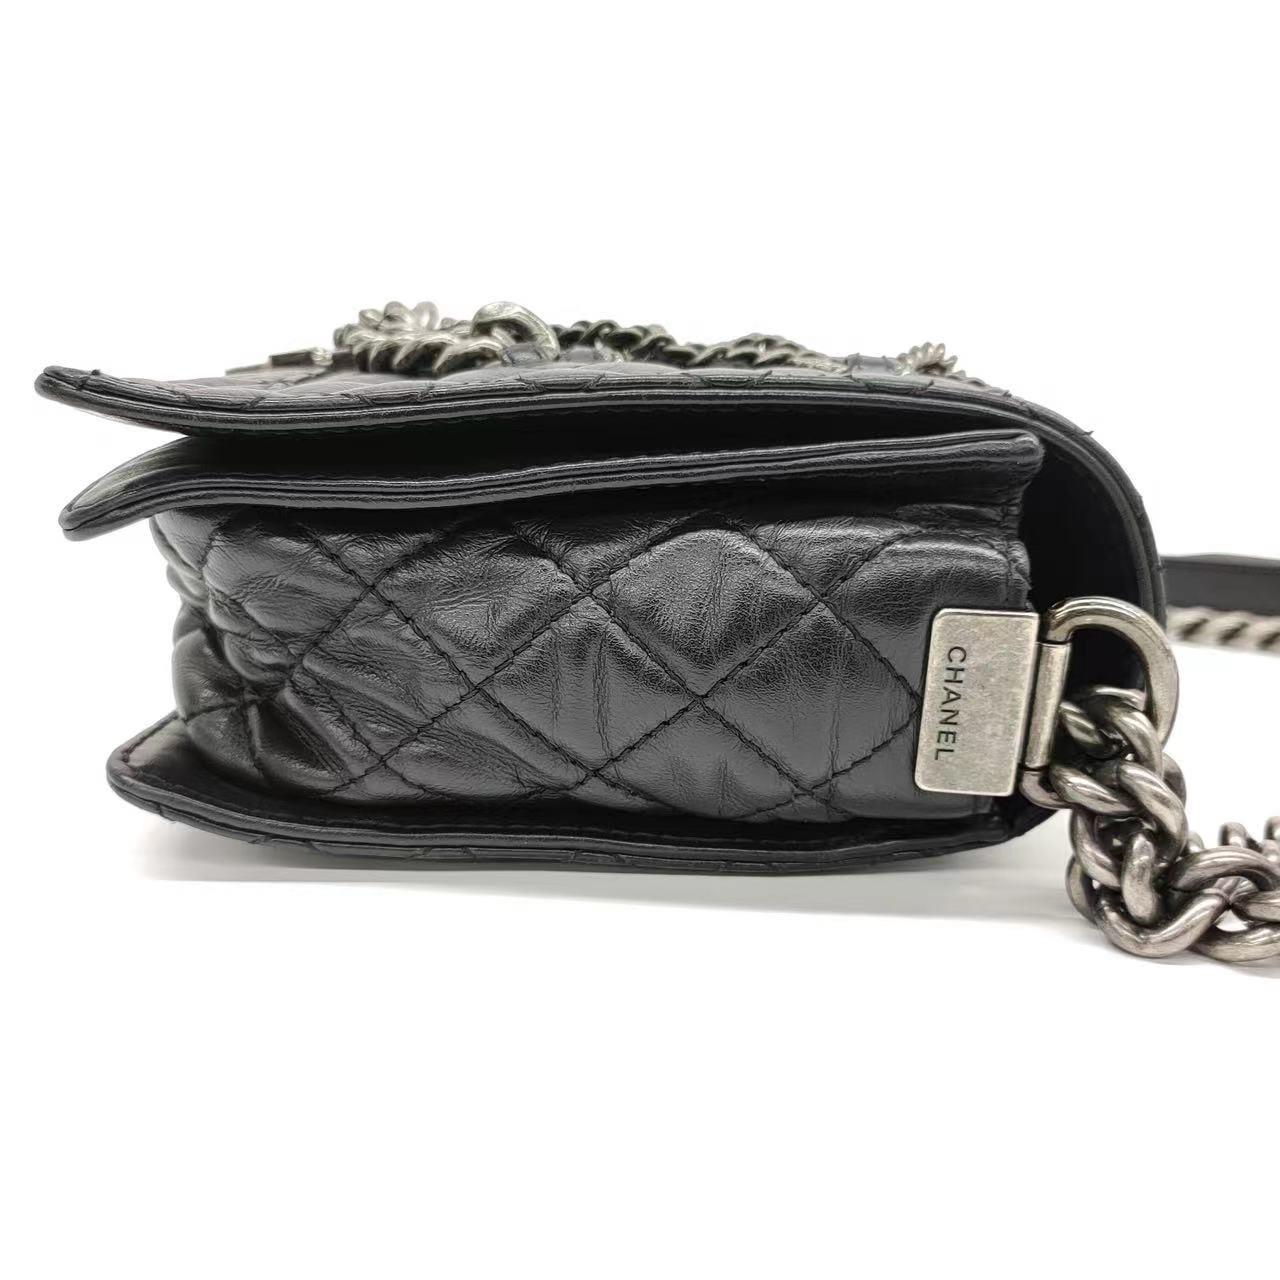 Diese Chanel Enchained Boy Bag ist aus schwarzem Lammleder gefertigt und mit silbernen Rotgussketten verziert. Sie ist sowohl stilvoll als auch funktional. Das ikonische Knabenschloss und die berühmte Chanel-Diamantensteppung zieren das Äußere,